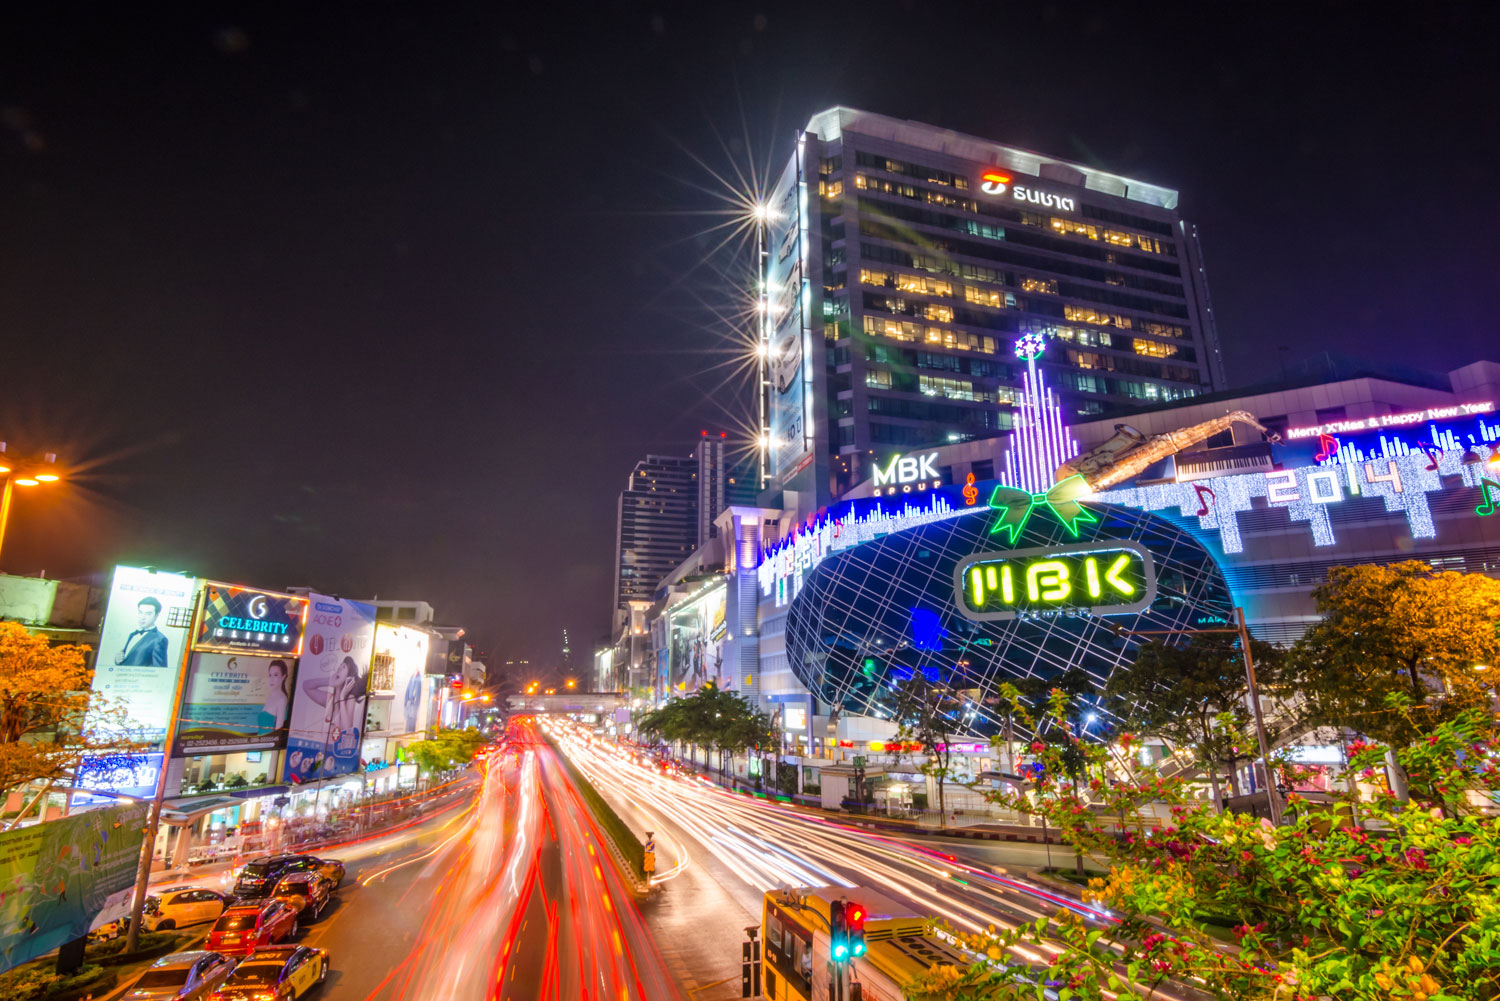 MBK shopping mall in Bangkok, Thailand.